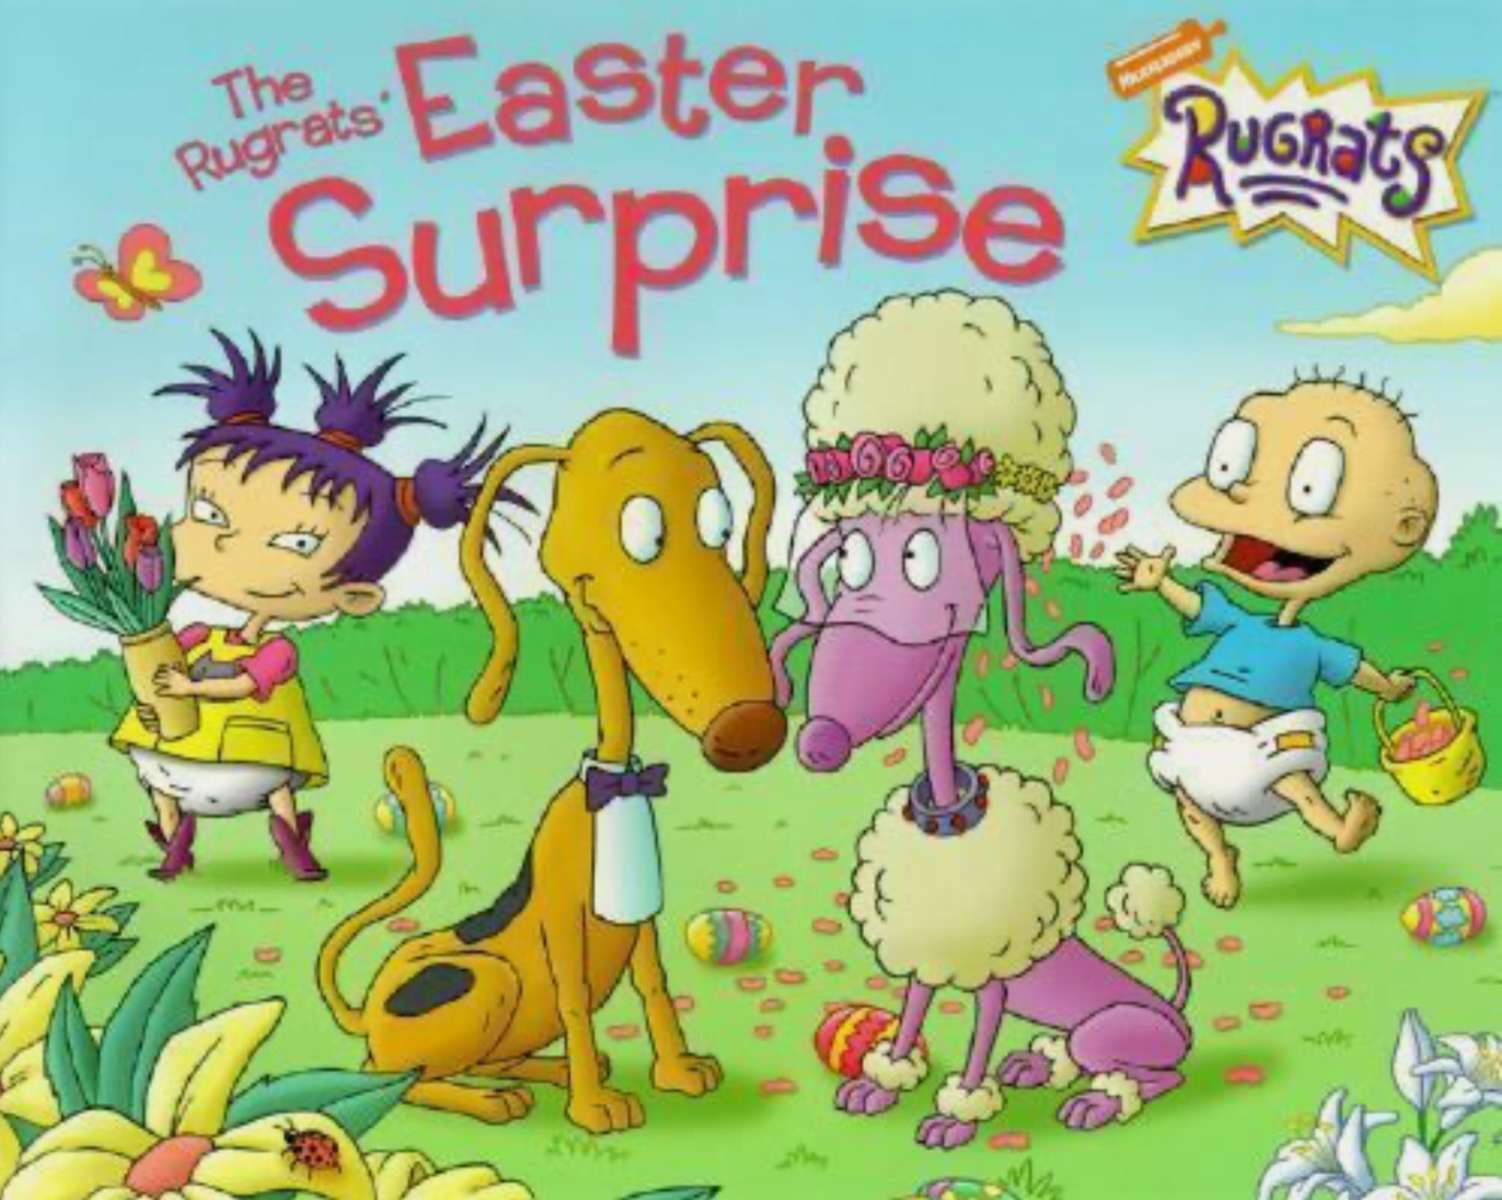 The Rugrats' Easter Surprise (Χαρτόδετο βιβλίο) παζλ online